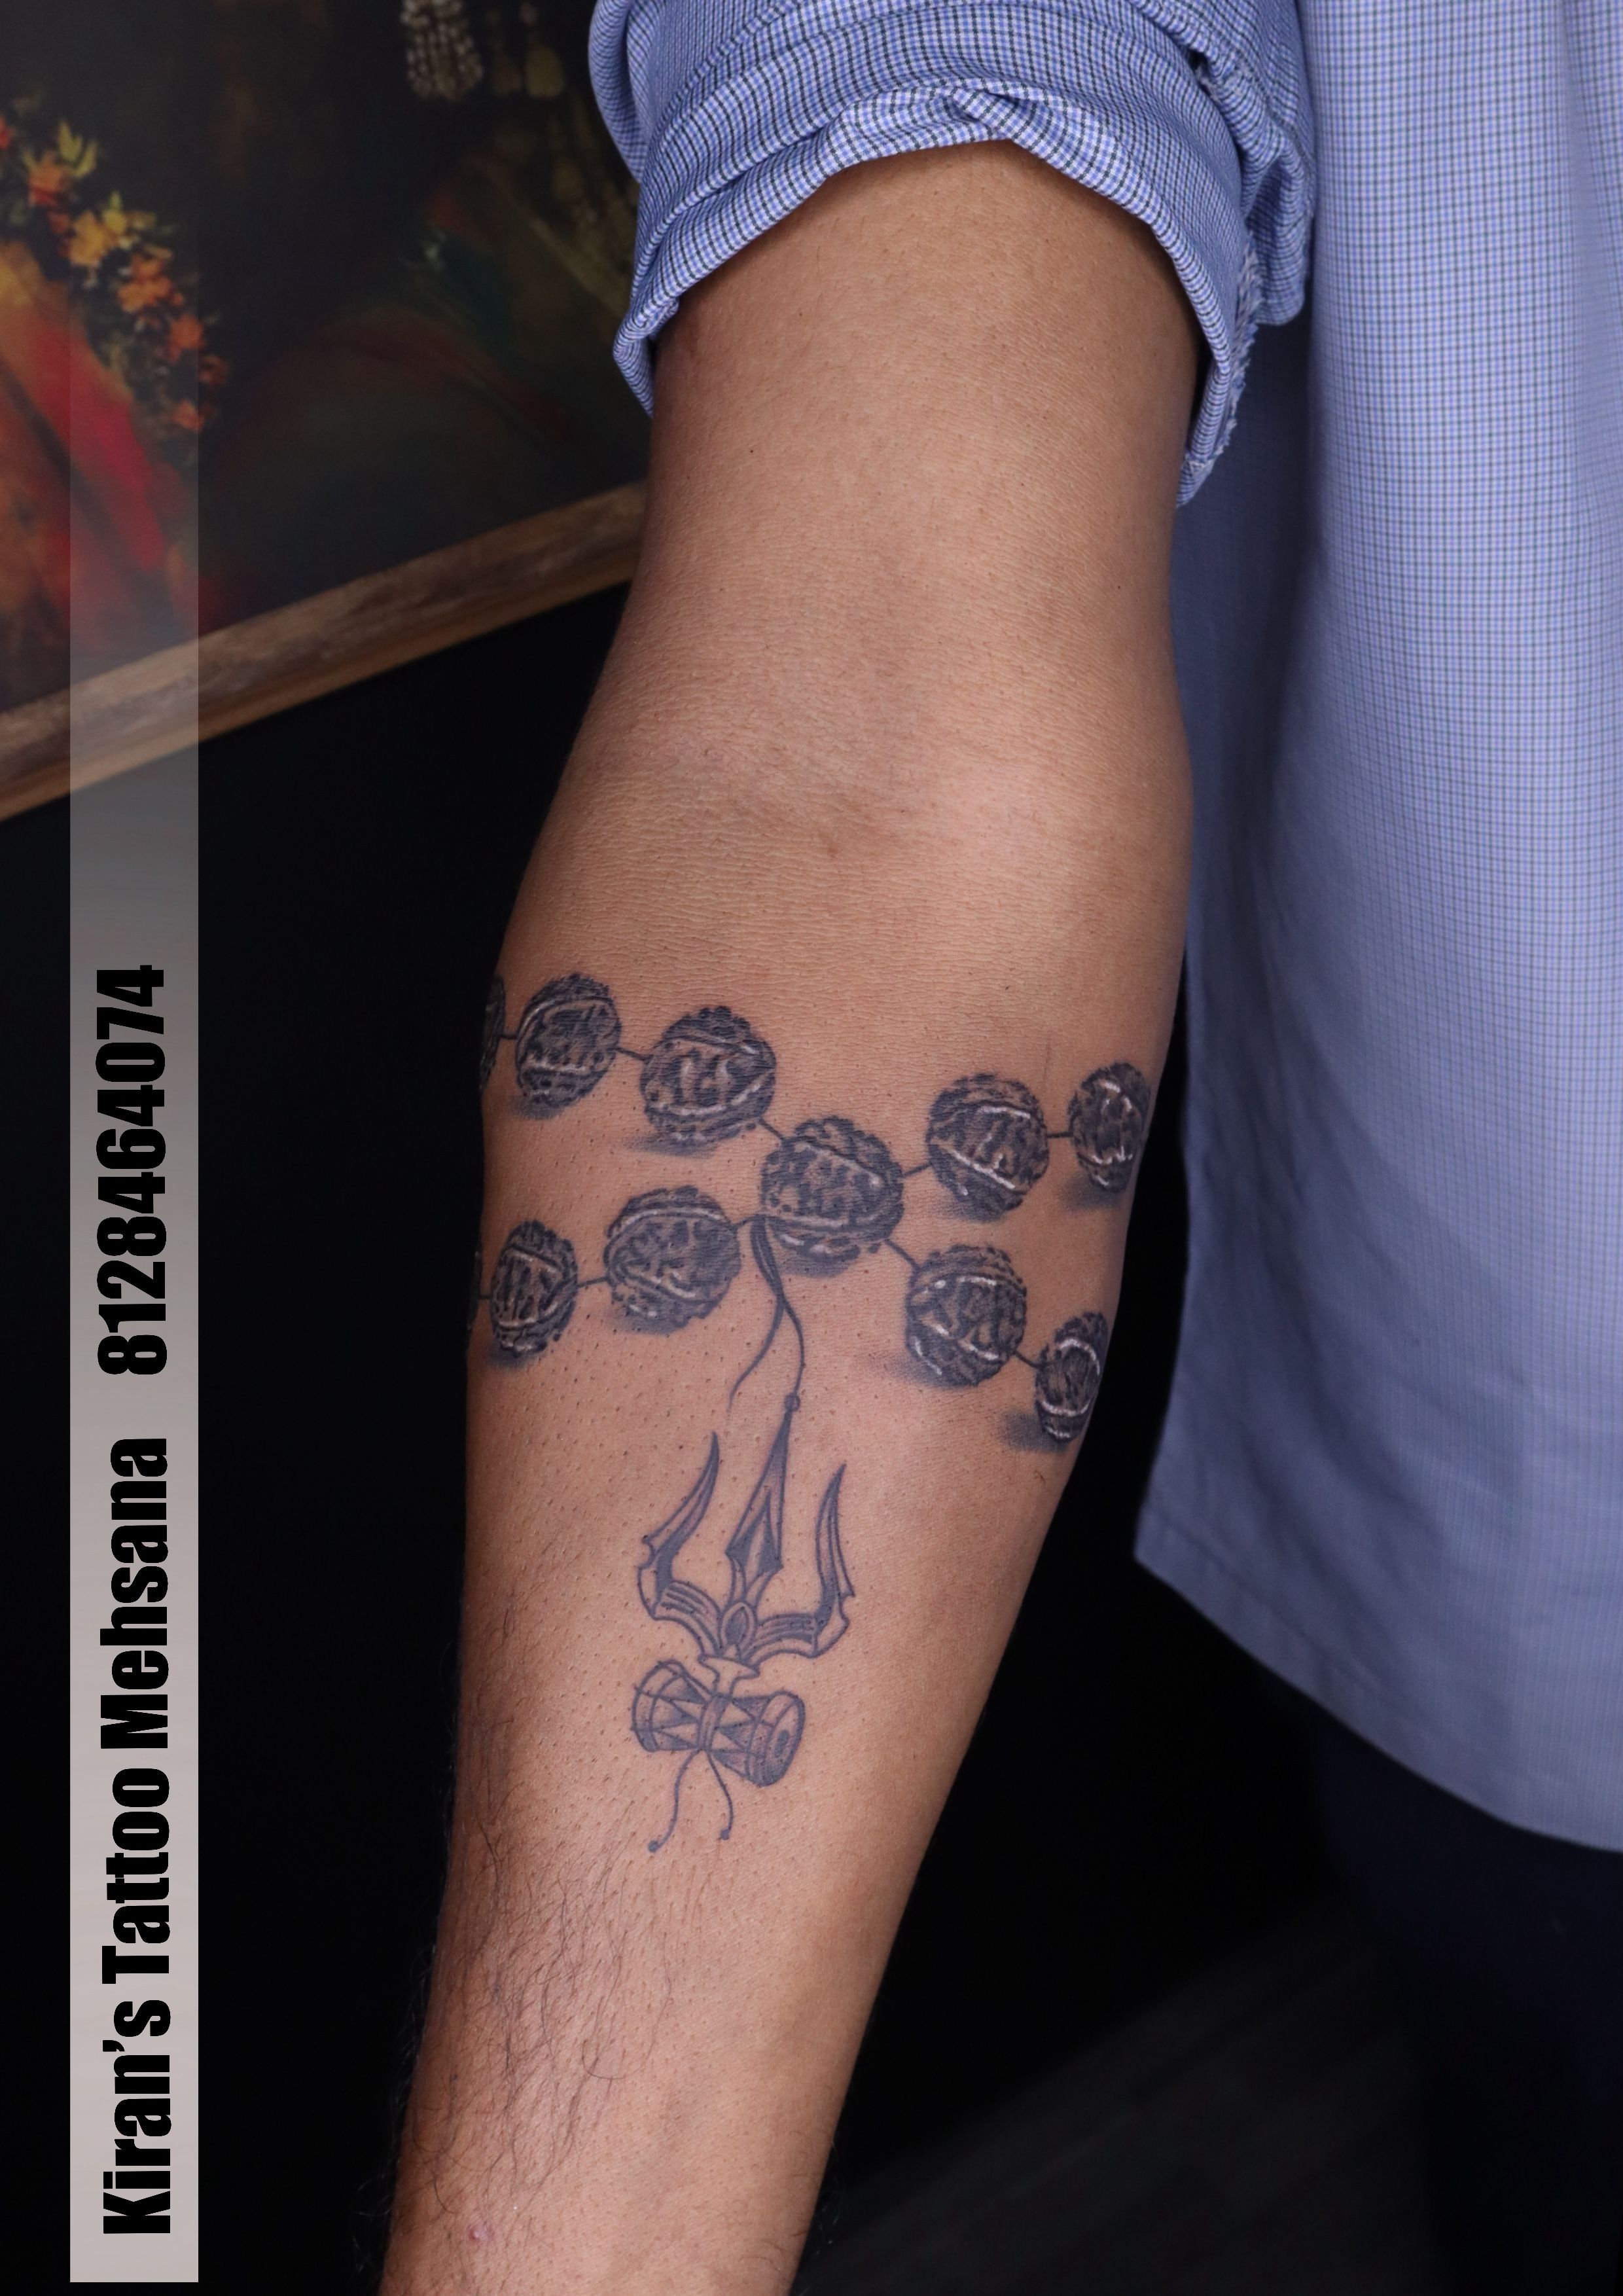 shiva #armband #tattoo ——————————————————— Tattoo studio- Manjeet Tattooz ;  E11 main jail road New Delhi 110018 Contact us - 01146125604 ,  9212732756... | By Manjeet TattoozFacebook